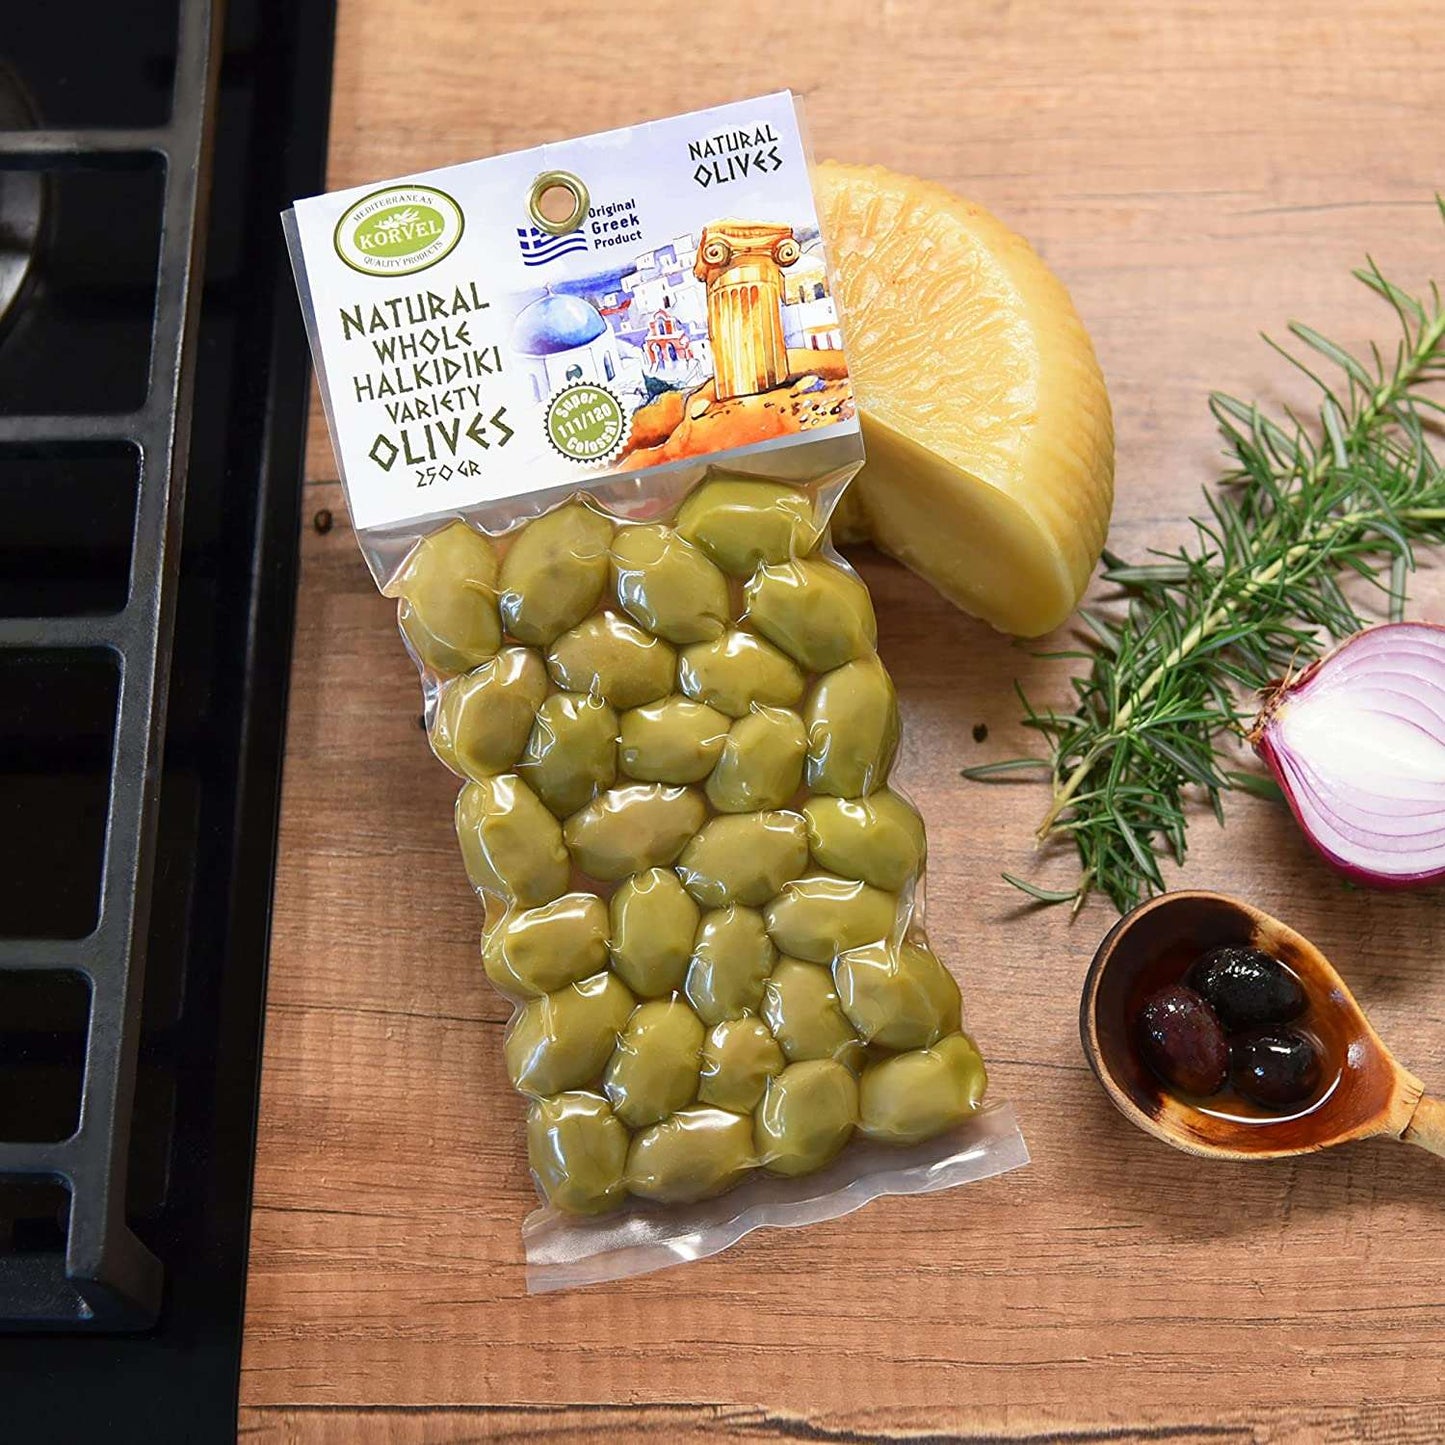 KORVEL Greek Olives - Halkidiki + Green Olives - set of two packs 2 x 0.55 lb - 1.1 lb